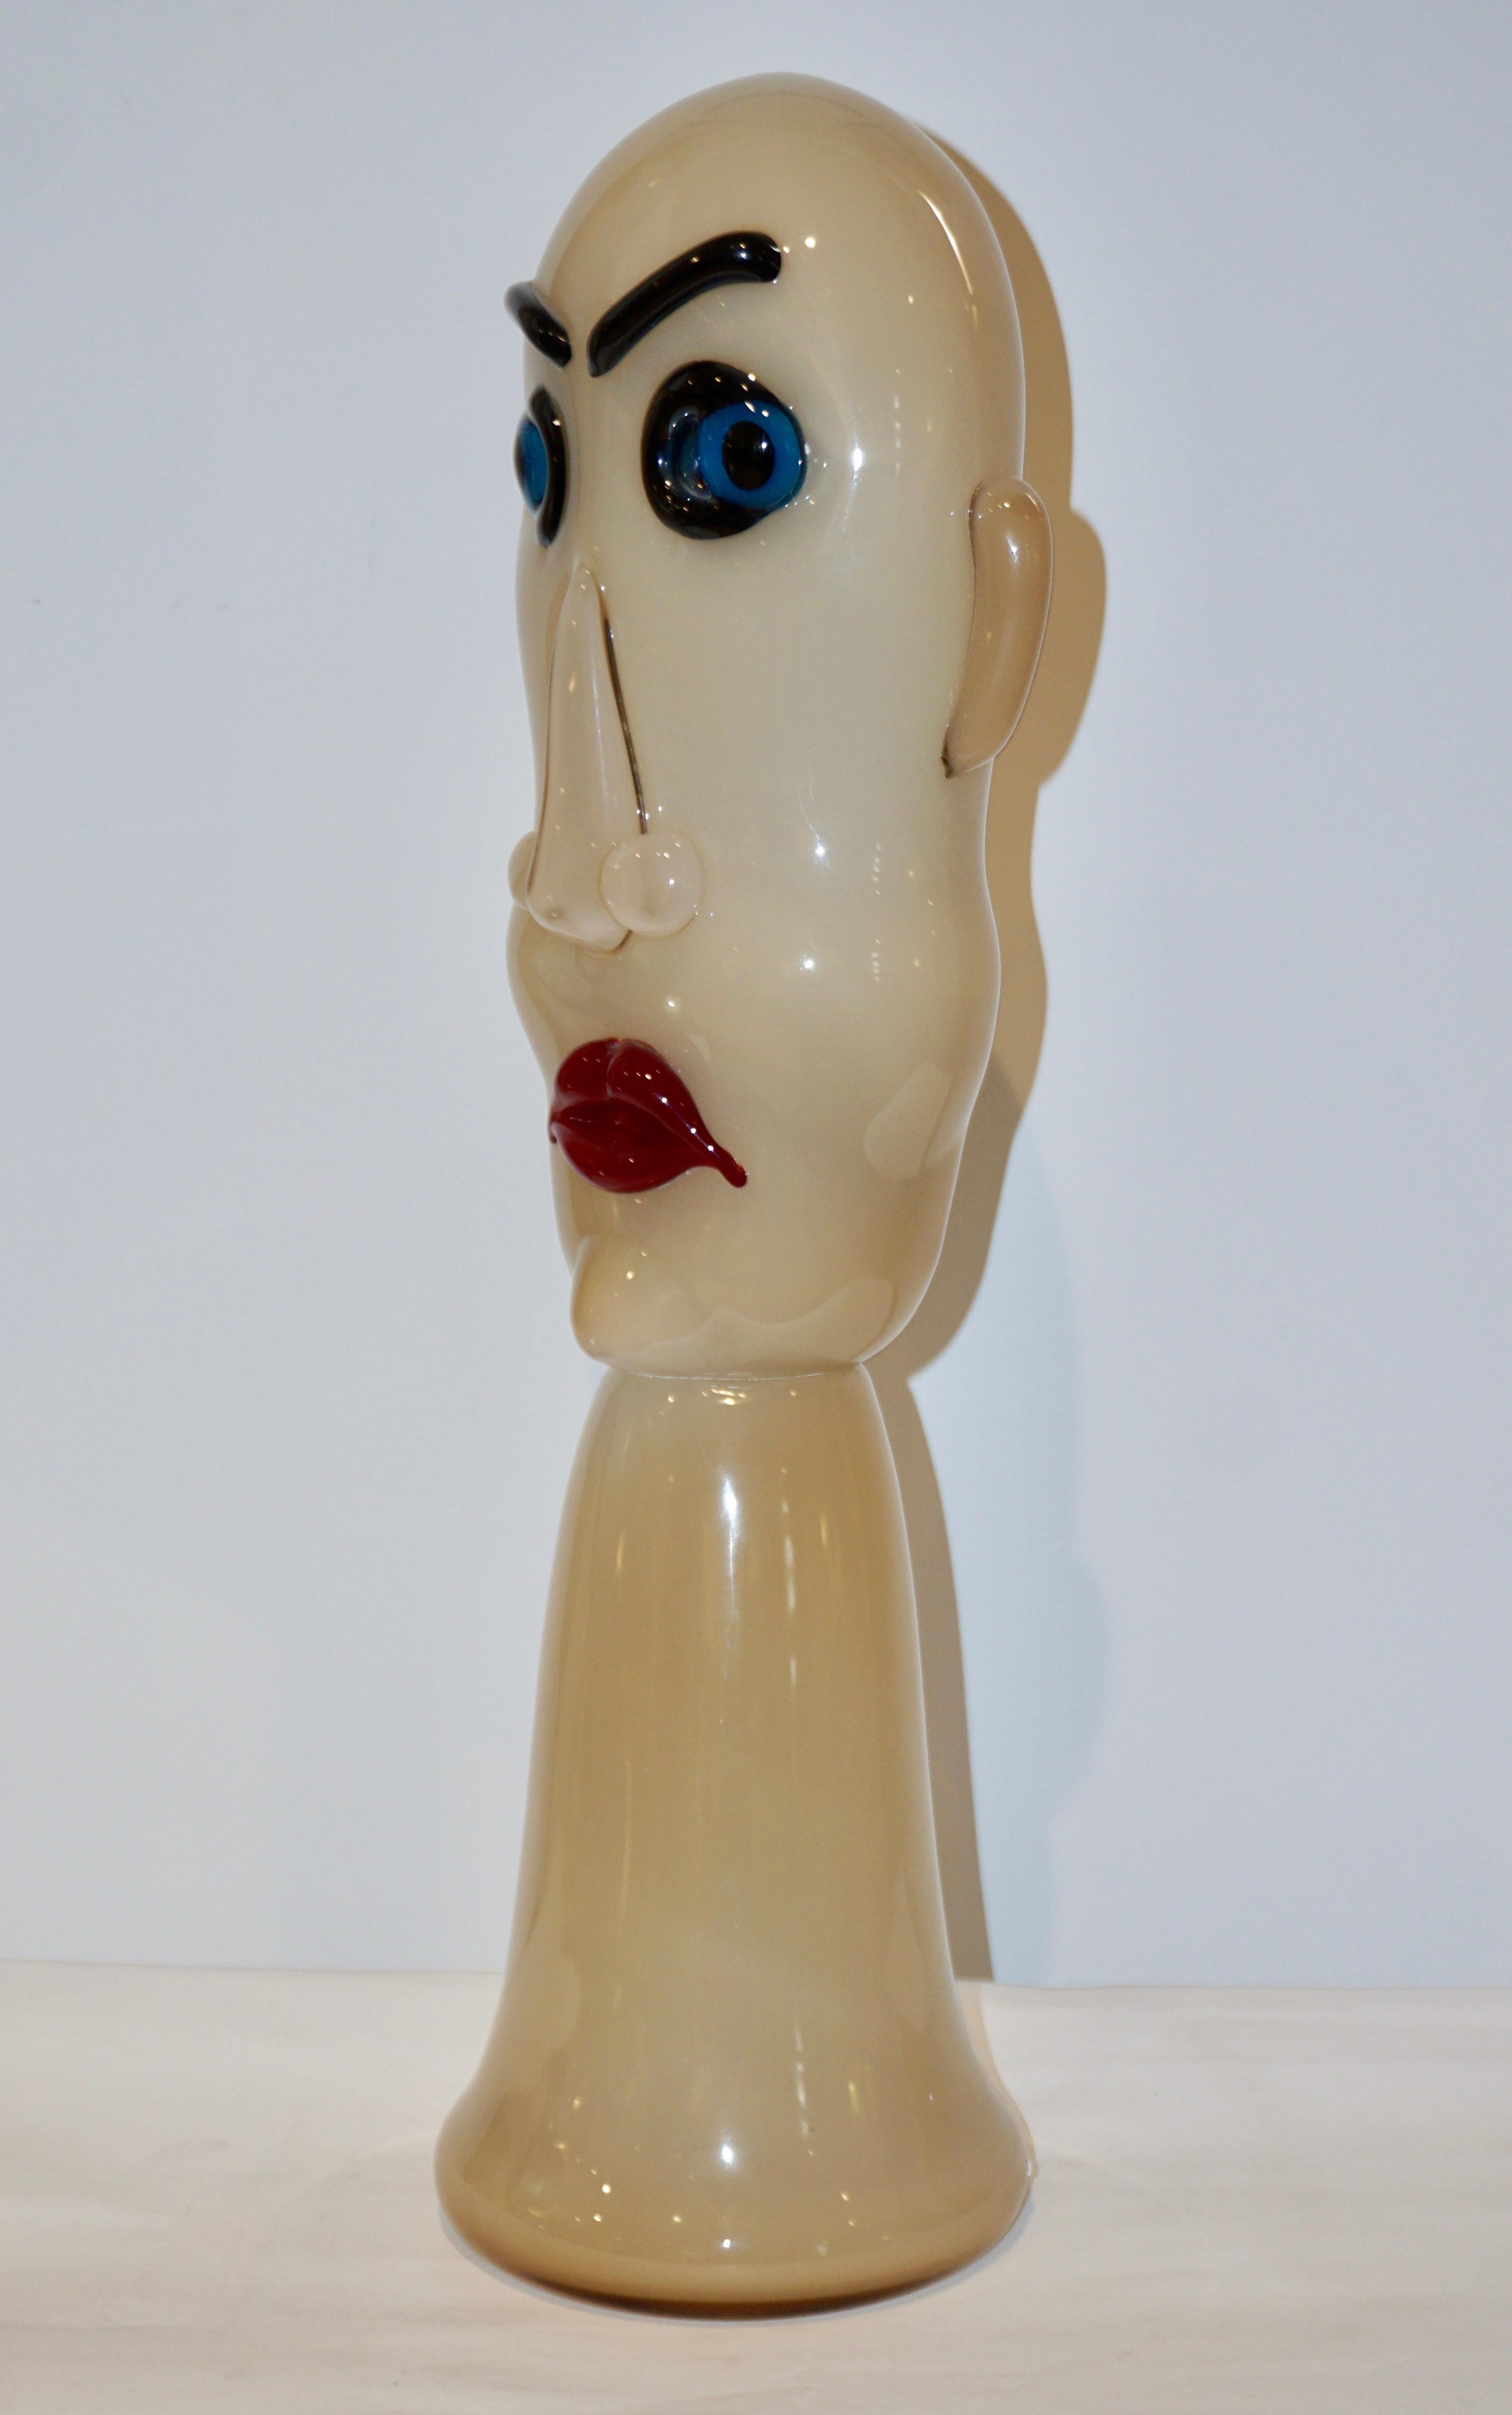 Eine 1980er Jahre, modernistische dynamische, komische mundgeblasene Kopfskulptur aus farbigem Muranoglas, in Elfenbeinmilchweiß, das Gesicht mit blauen Augen und roten Lippen. Die Produktion war sehr begrenzt, jedes Stück wurde einzeln angefertigt,